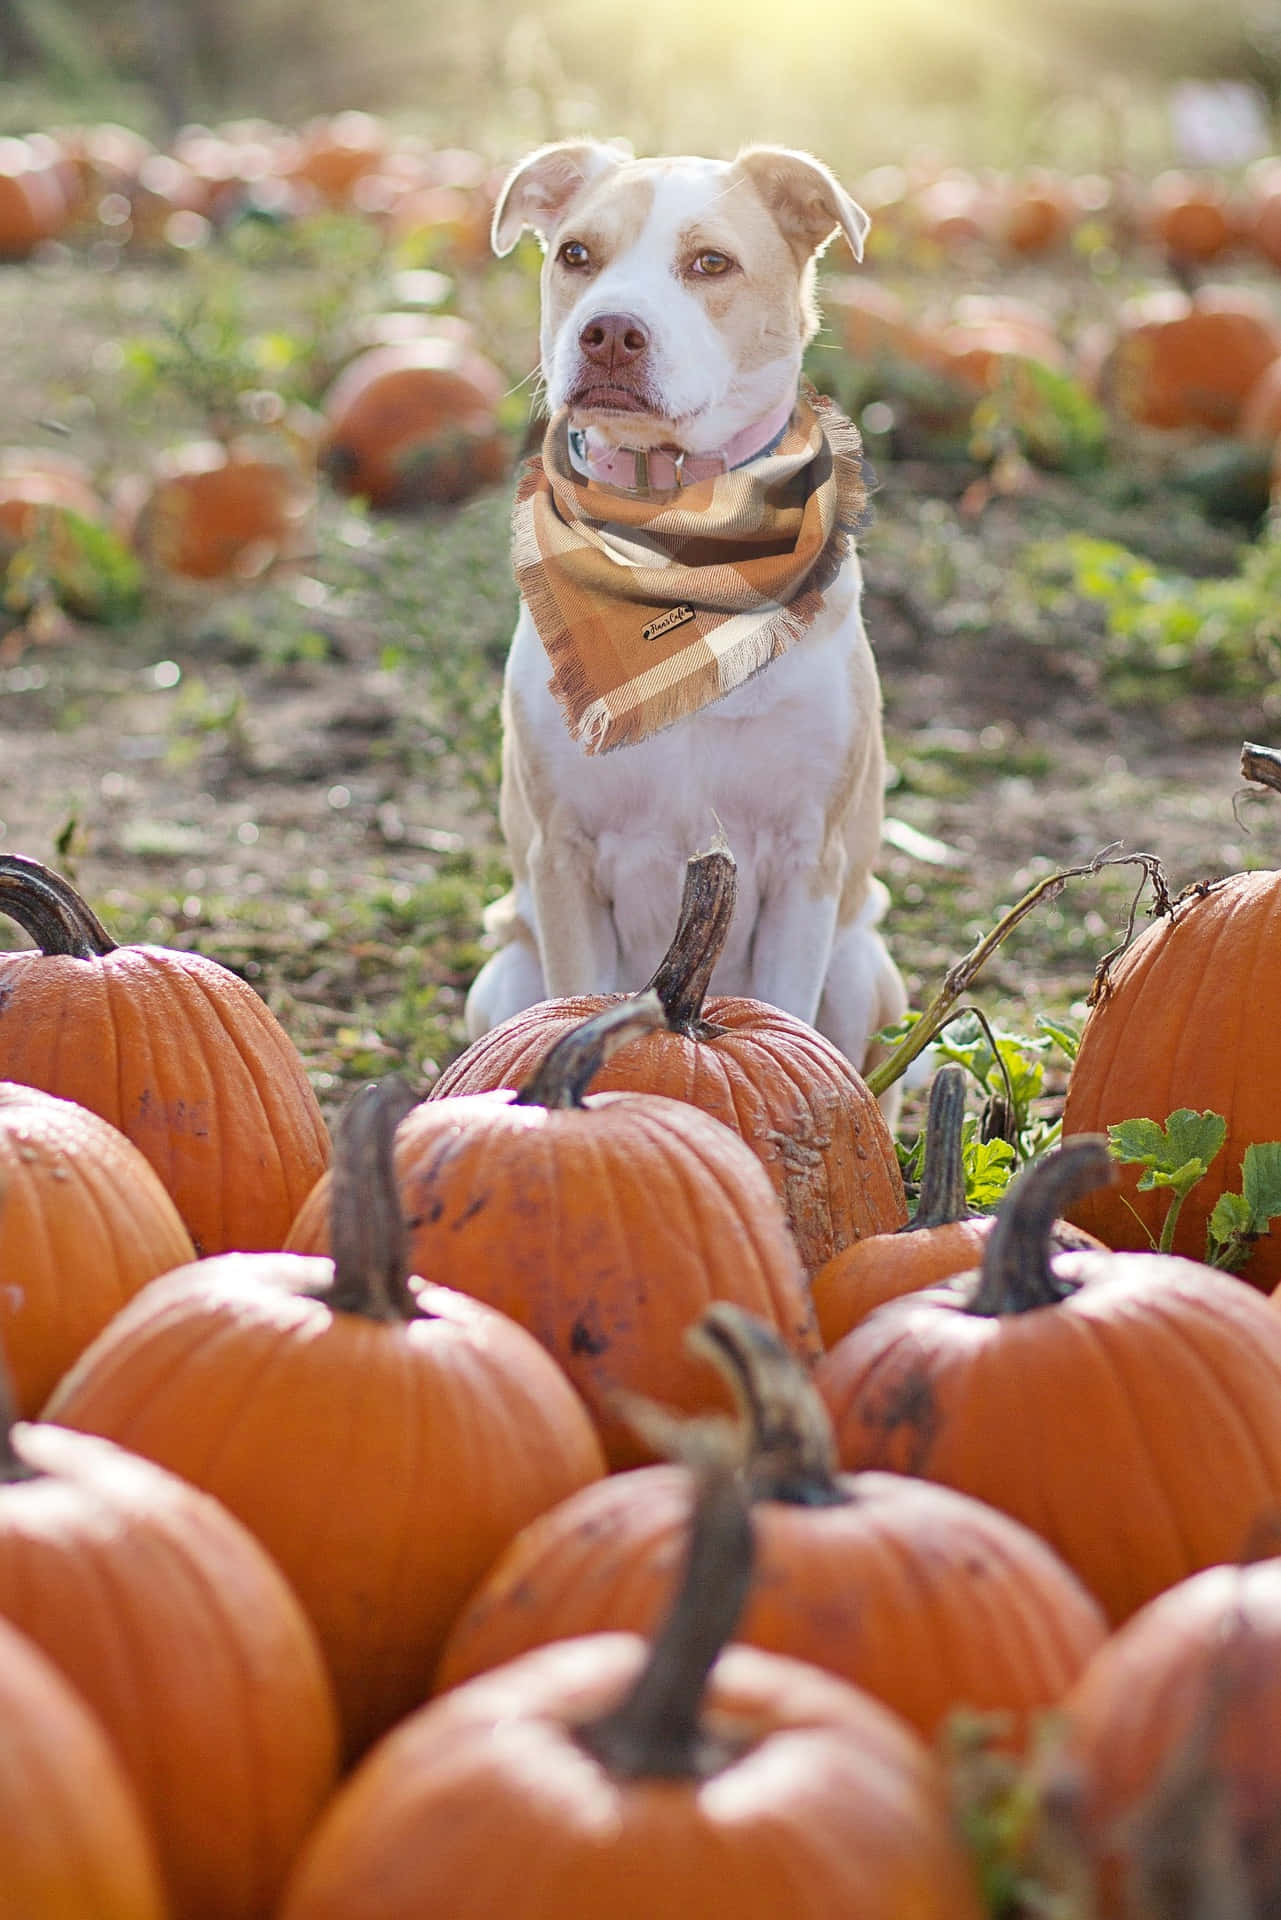 Cute Puppy At A Pumpkin Patch Picture